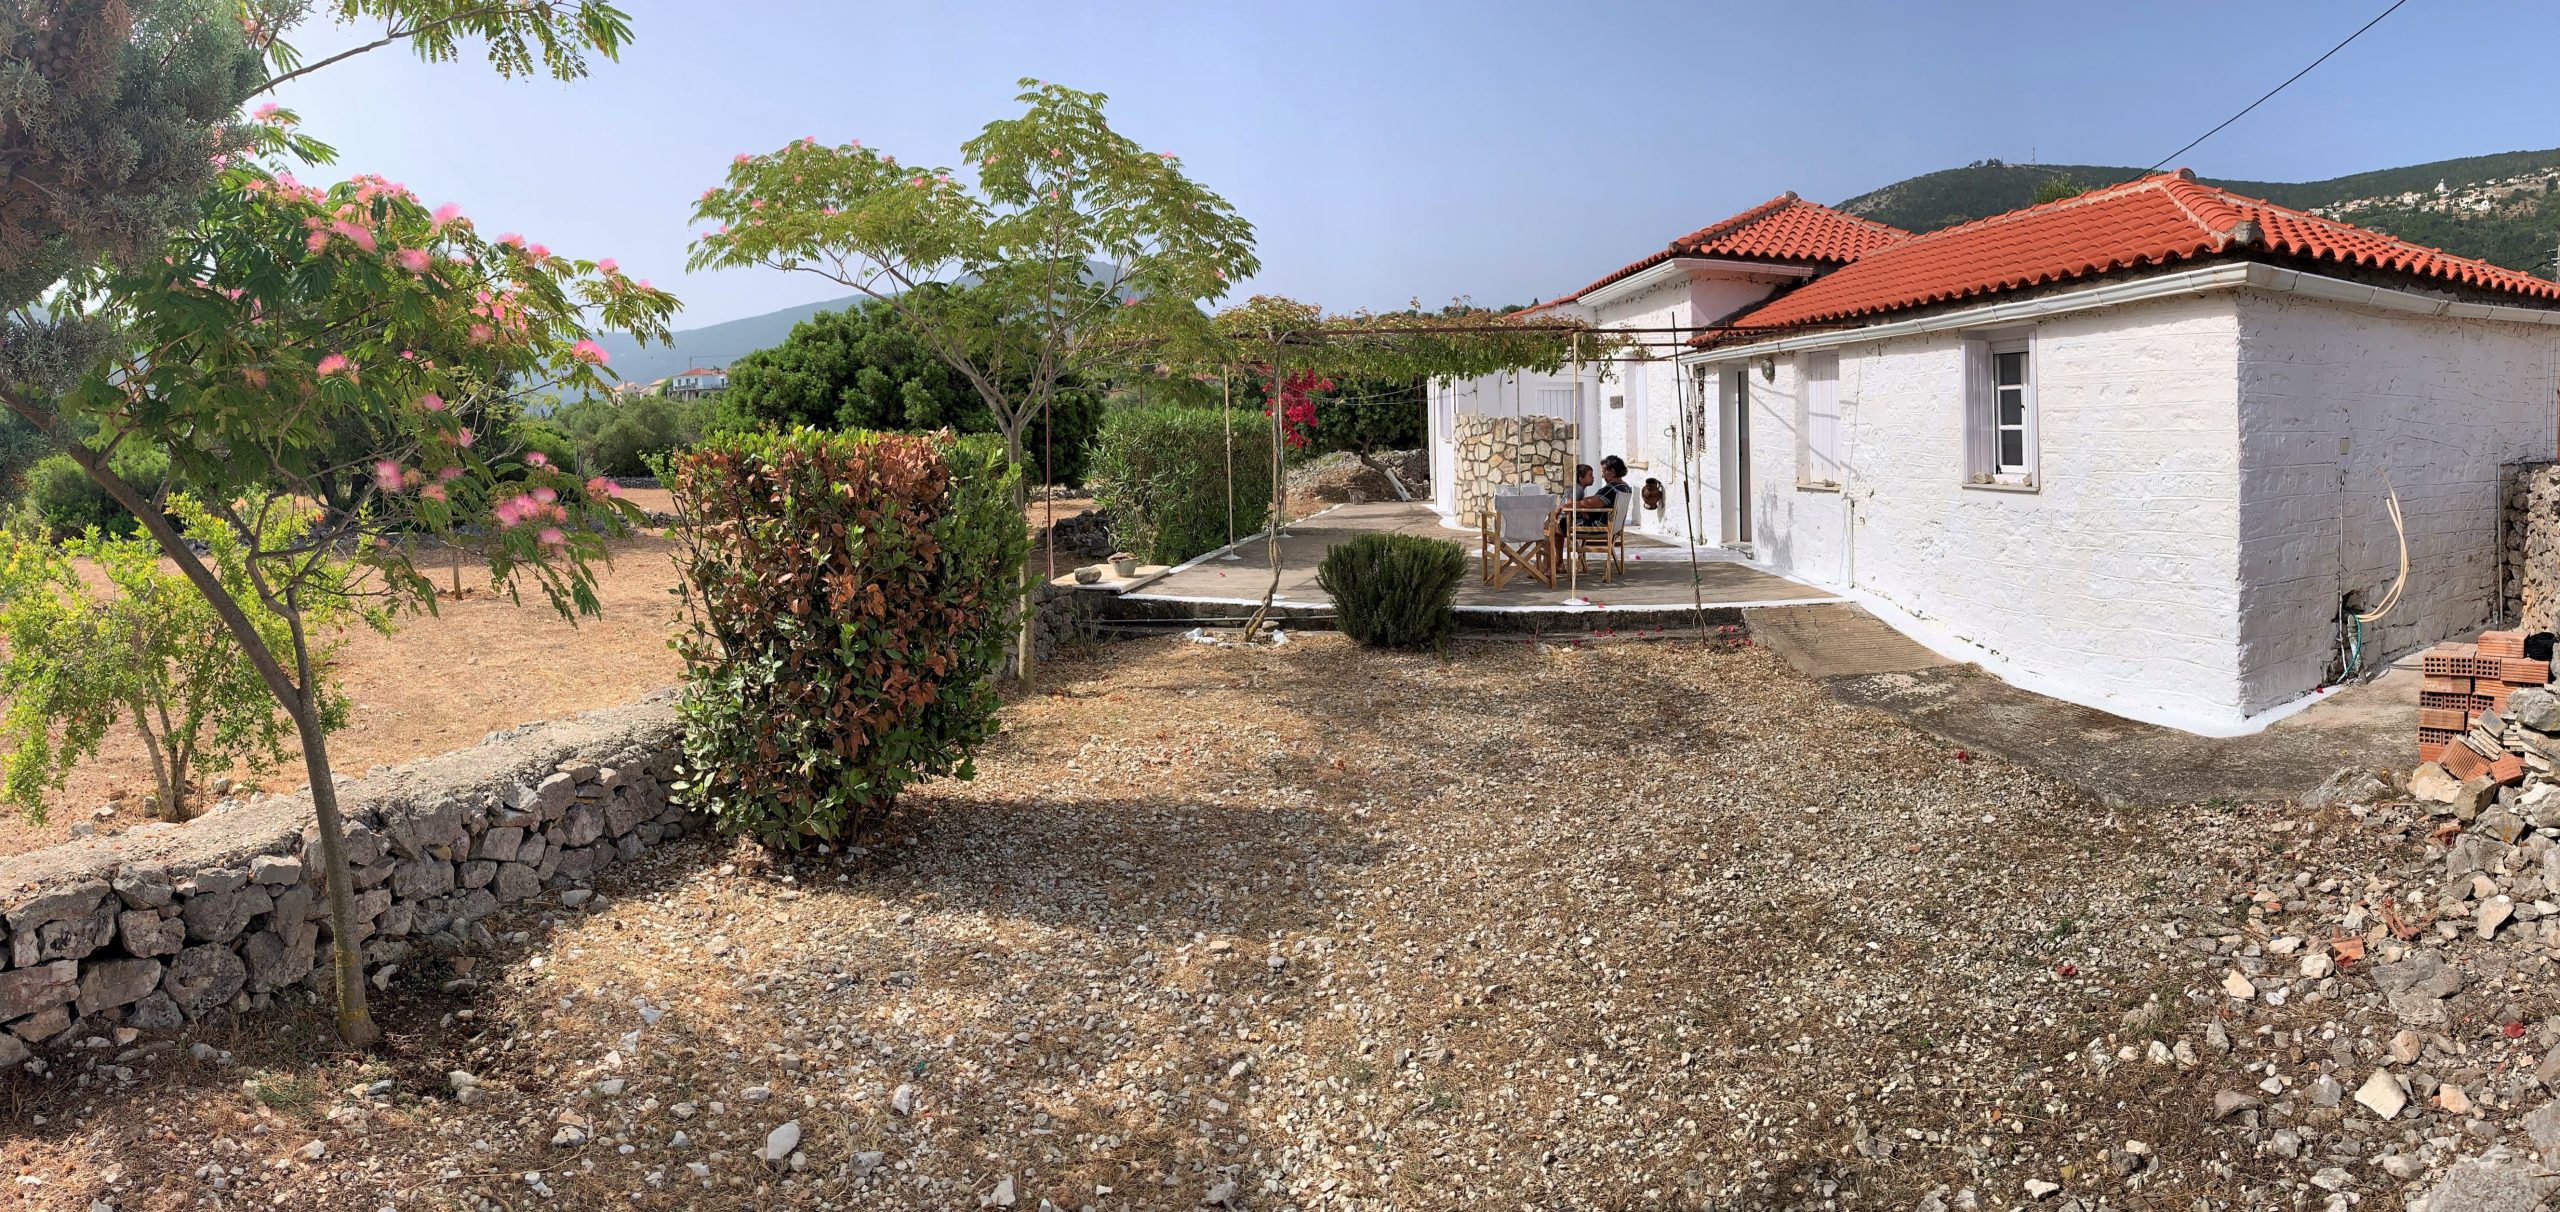 Εξωτερικοί χώροι κατοικίας προς ενοικίαση Ιθάκια Ελλάδα, Αφάλες